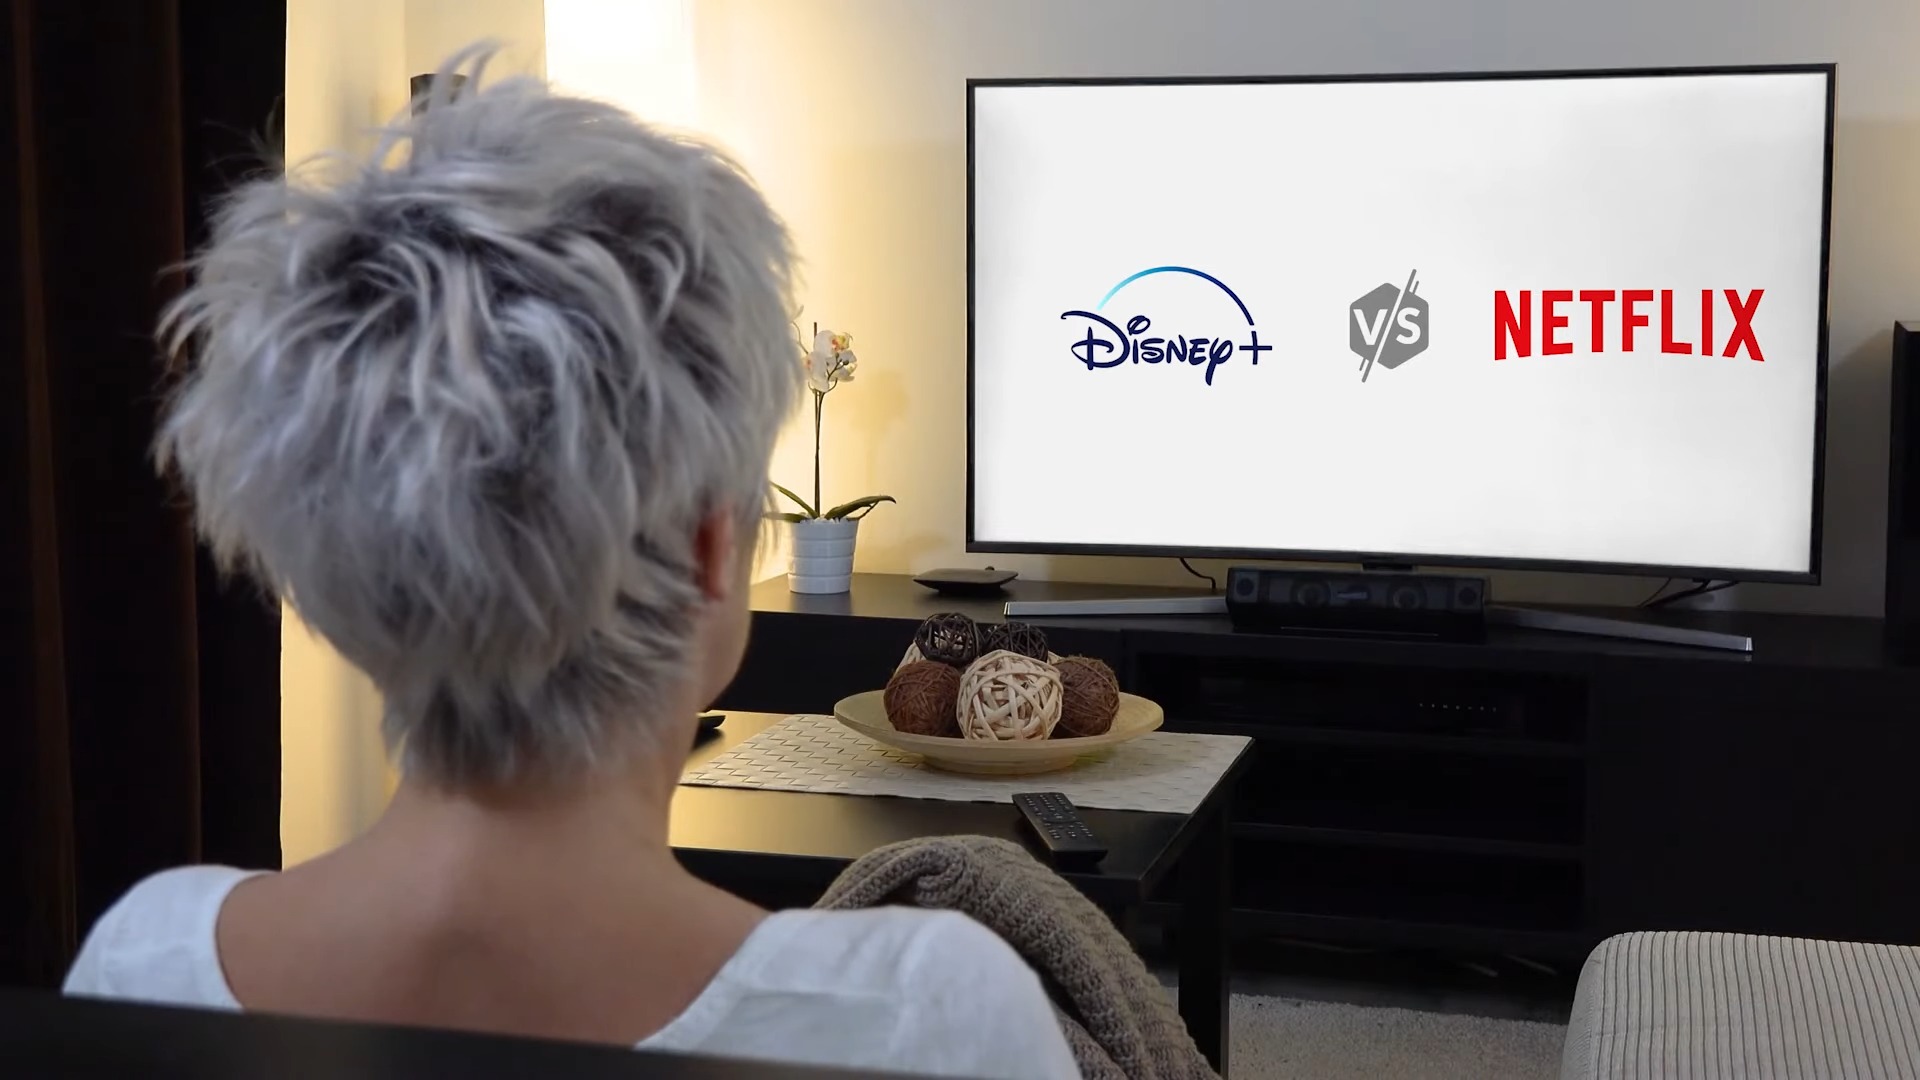 Disney+ vs Netflix